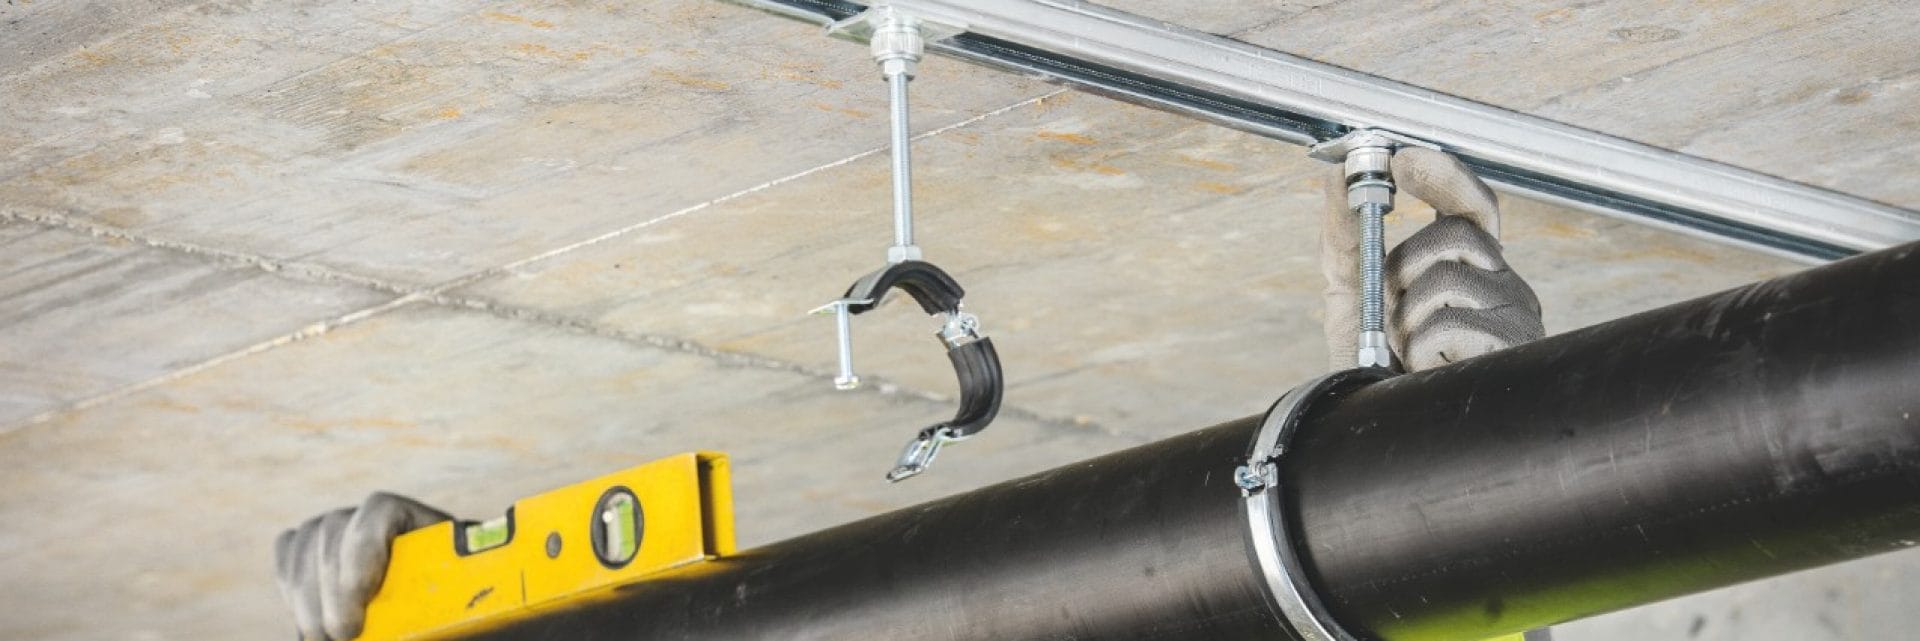 Avec le raccord de serrage Hilti réglable en hauteur, l'alignement des tuyaux inclinés suspendus est rapide et facile